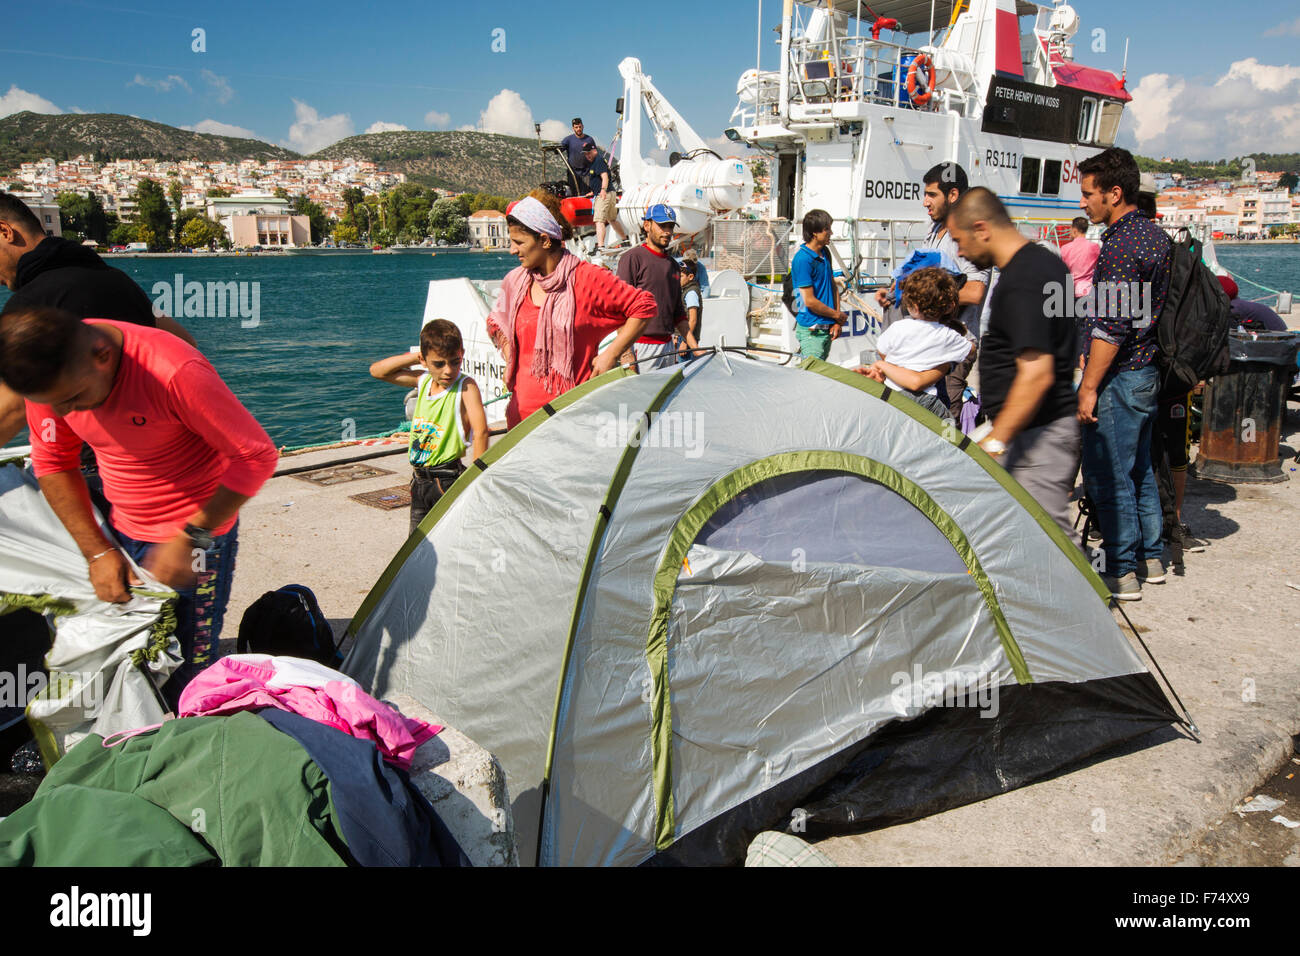 Migrantes sirios que huían de la guerra y escapar a Europa, que han desembarcado en la isla griega de Lesbos, en la costa norte a Efthalou, aquí con un barco de la patrulla fronteriza en el fondo. Hasta 4.000 migrantes un día se desembarque en la isla y aplastante de las autoridades. Son traficked ilegal turca por traficantes de personas que cobran hasta $2,000 por persona para un viaje de media hora en un superpoblado inflateable barco desde la península turca a Lesvos. Foto de stock